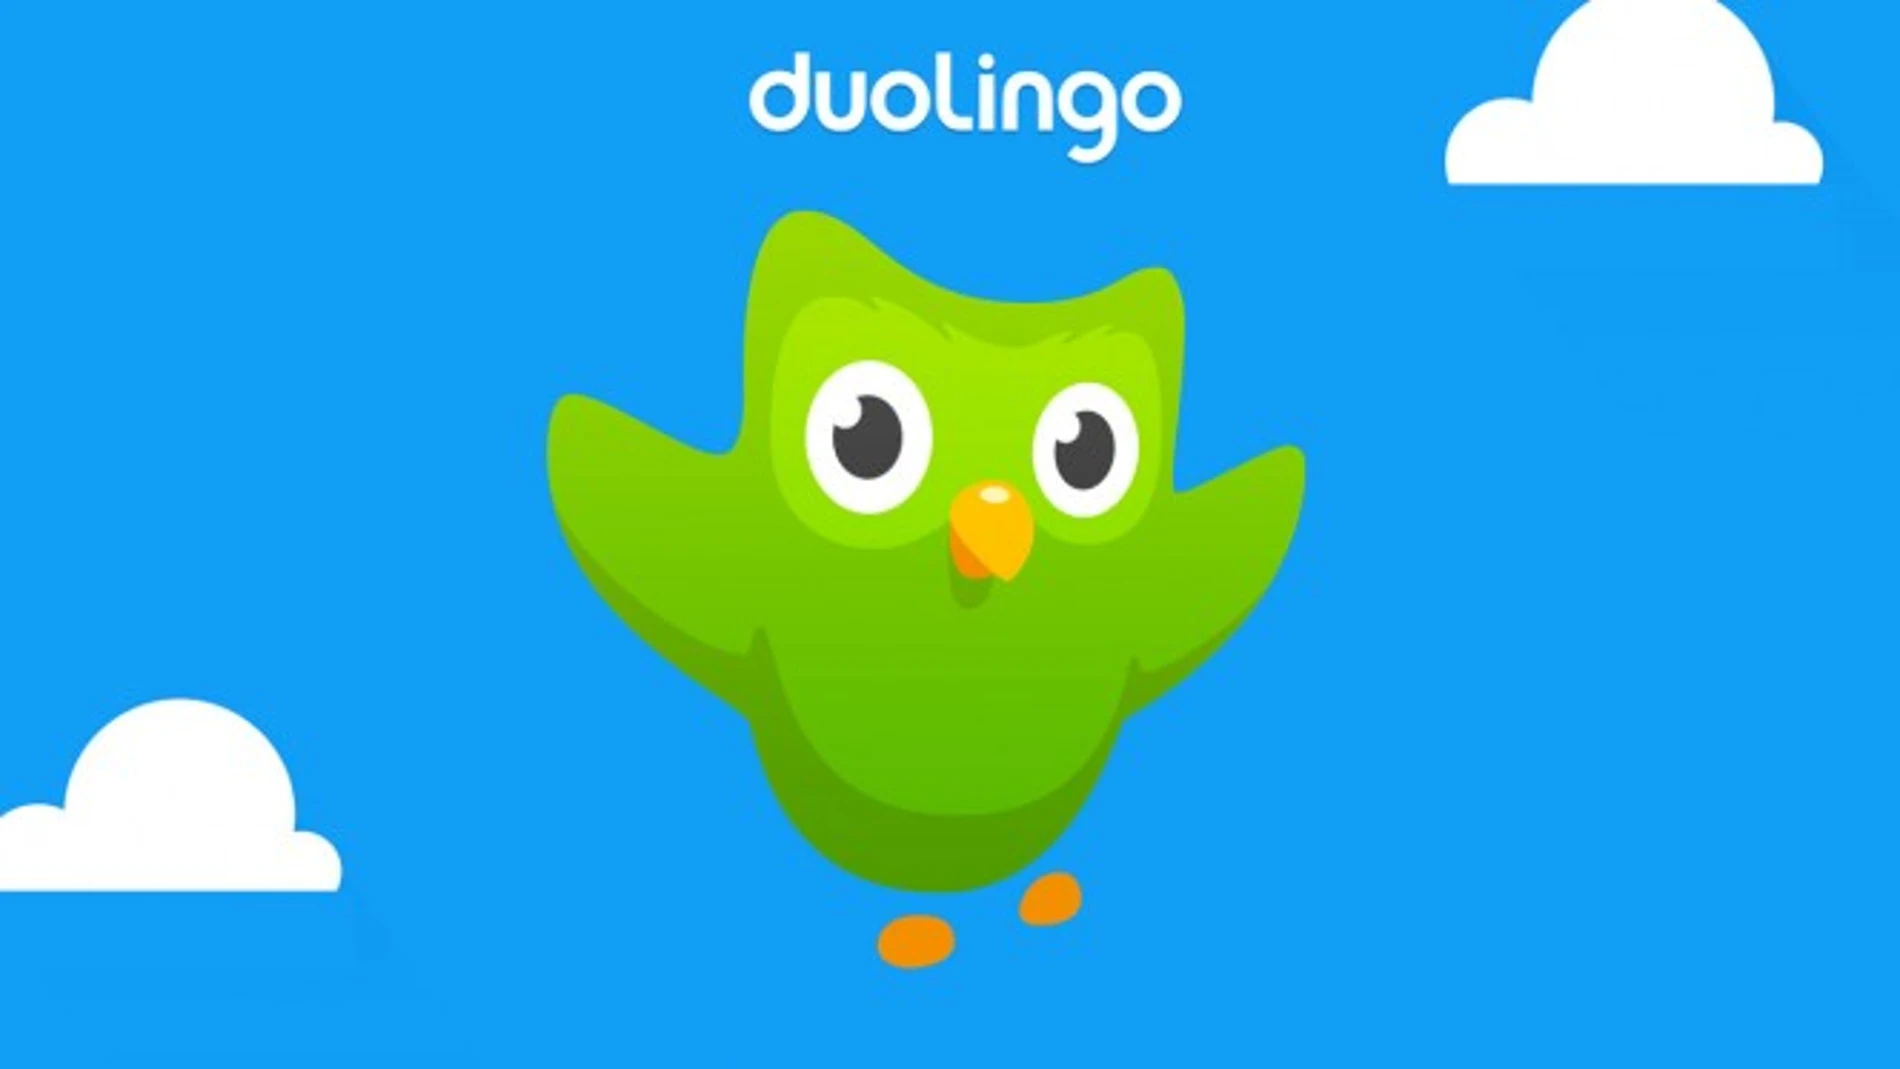 Duolingo, la app de idiomas, recibe 25 millones de dólares de financiación